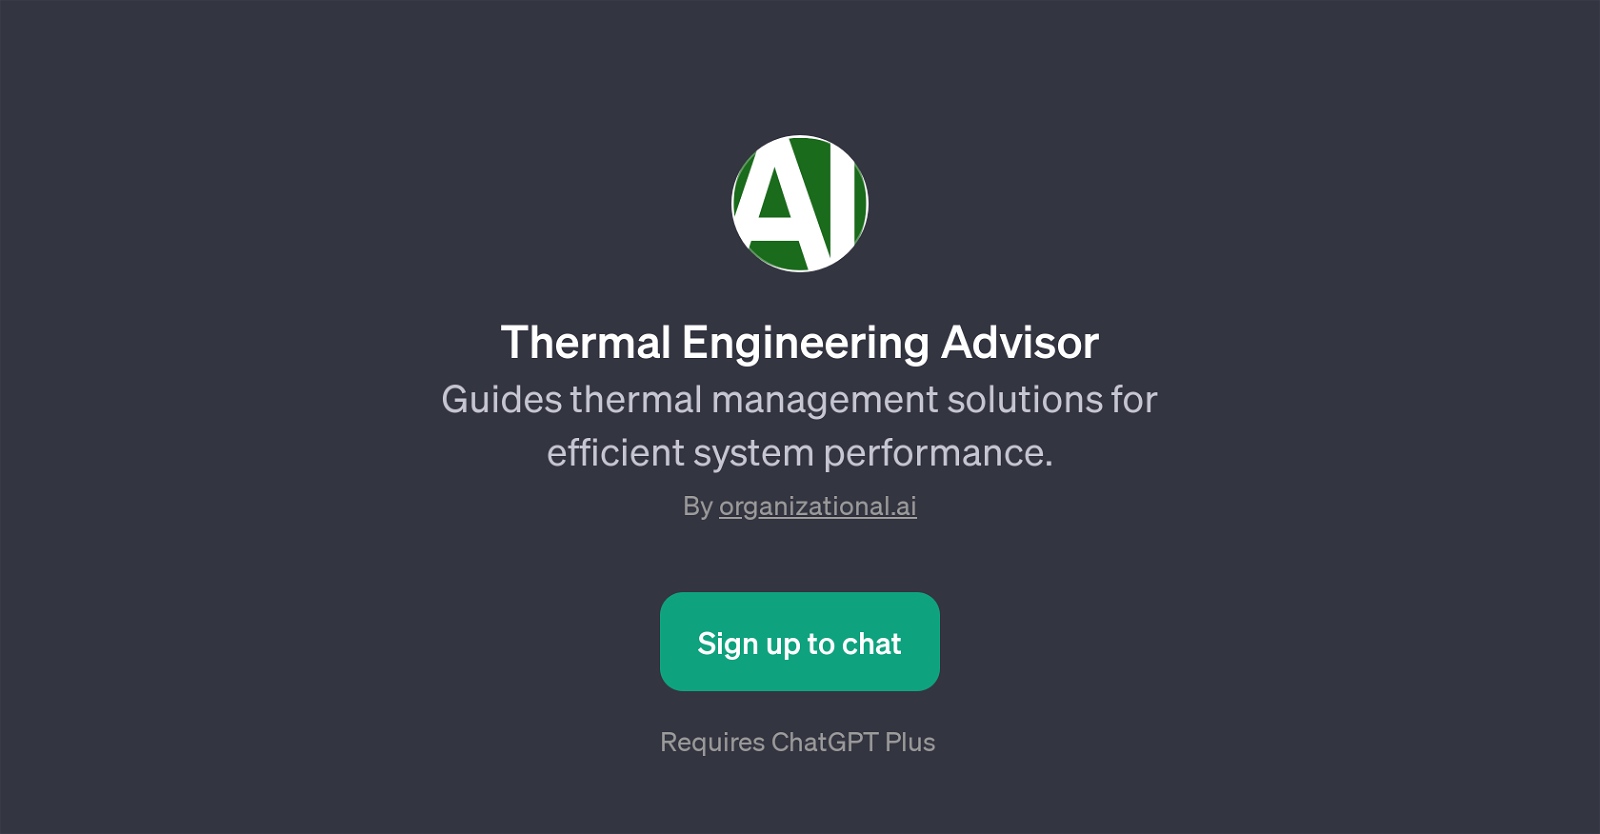 Thermal Engineering Advisor website